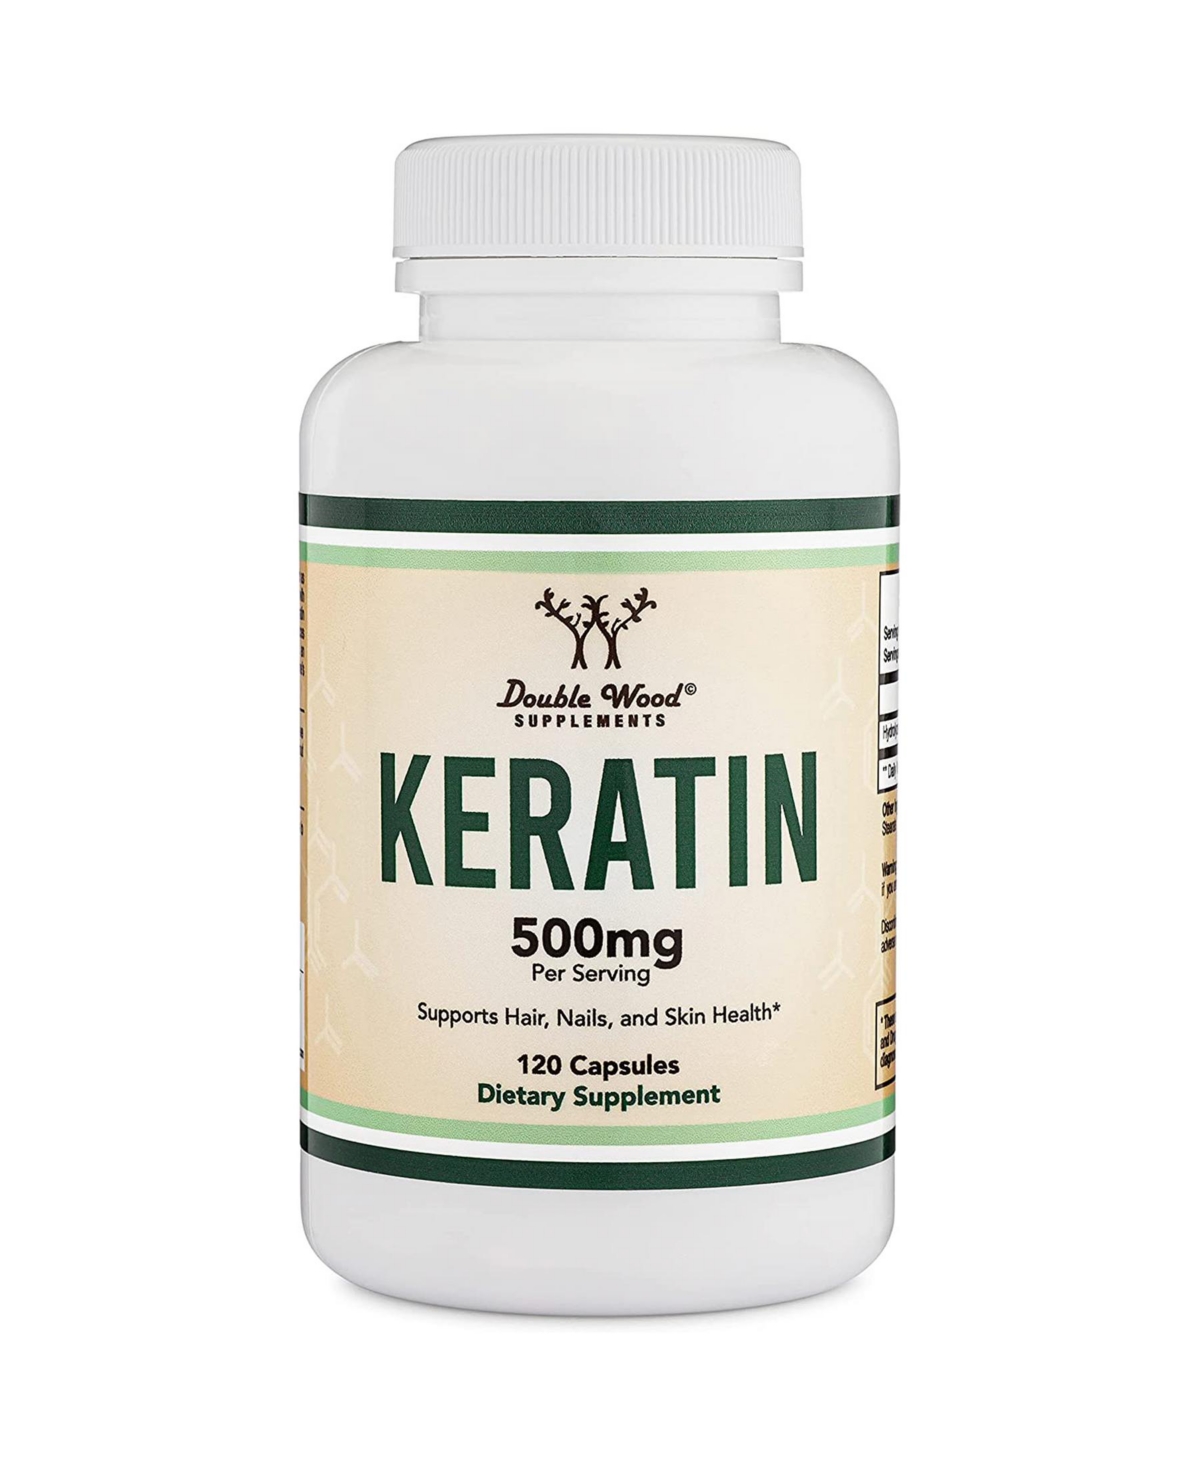 Keratin - 120 capsules, 500 mg servings